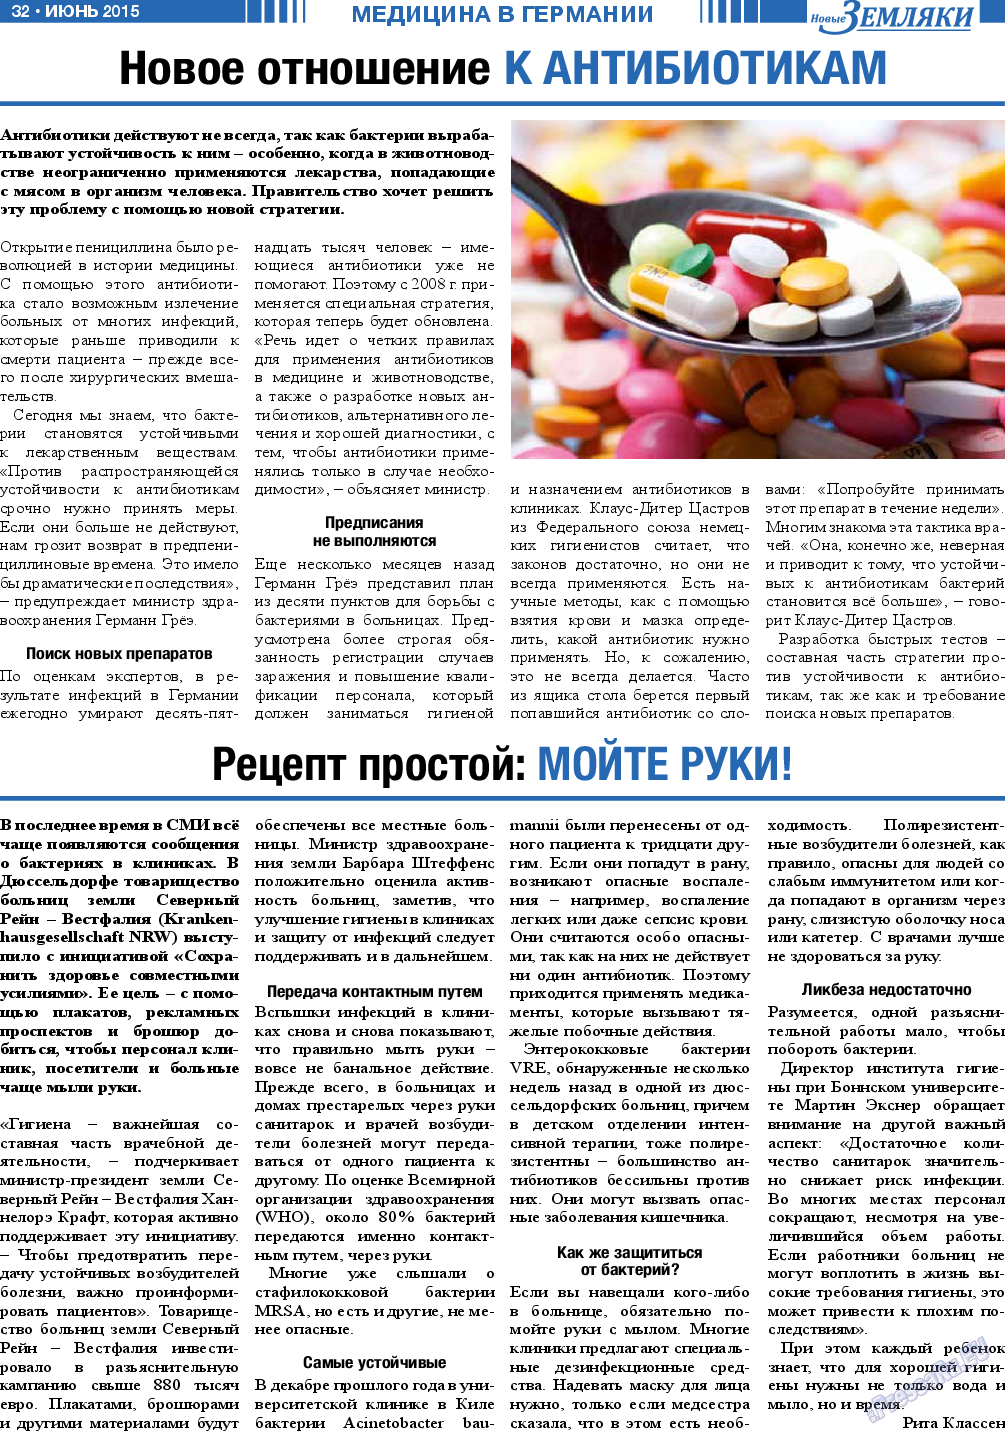 Новые Земляки, газета. 2015 №6 стр.32